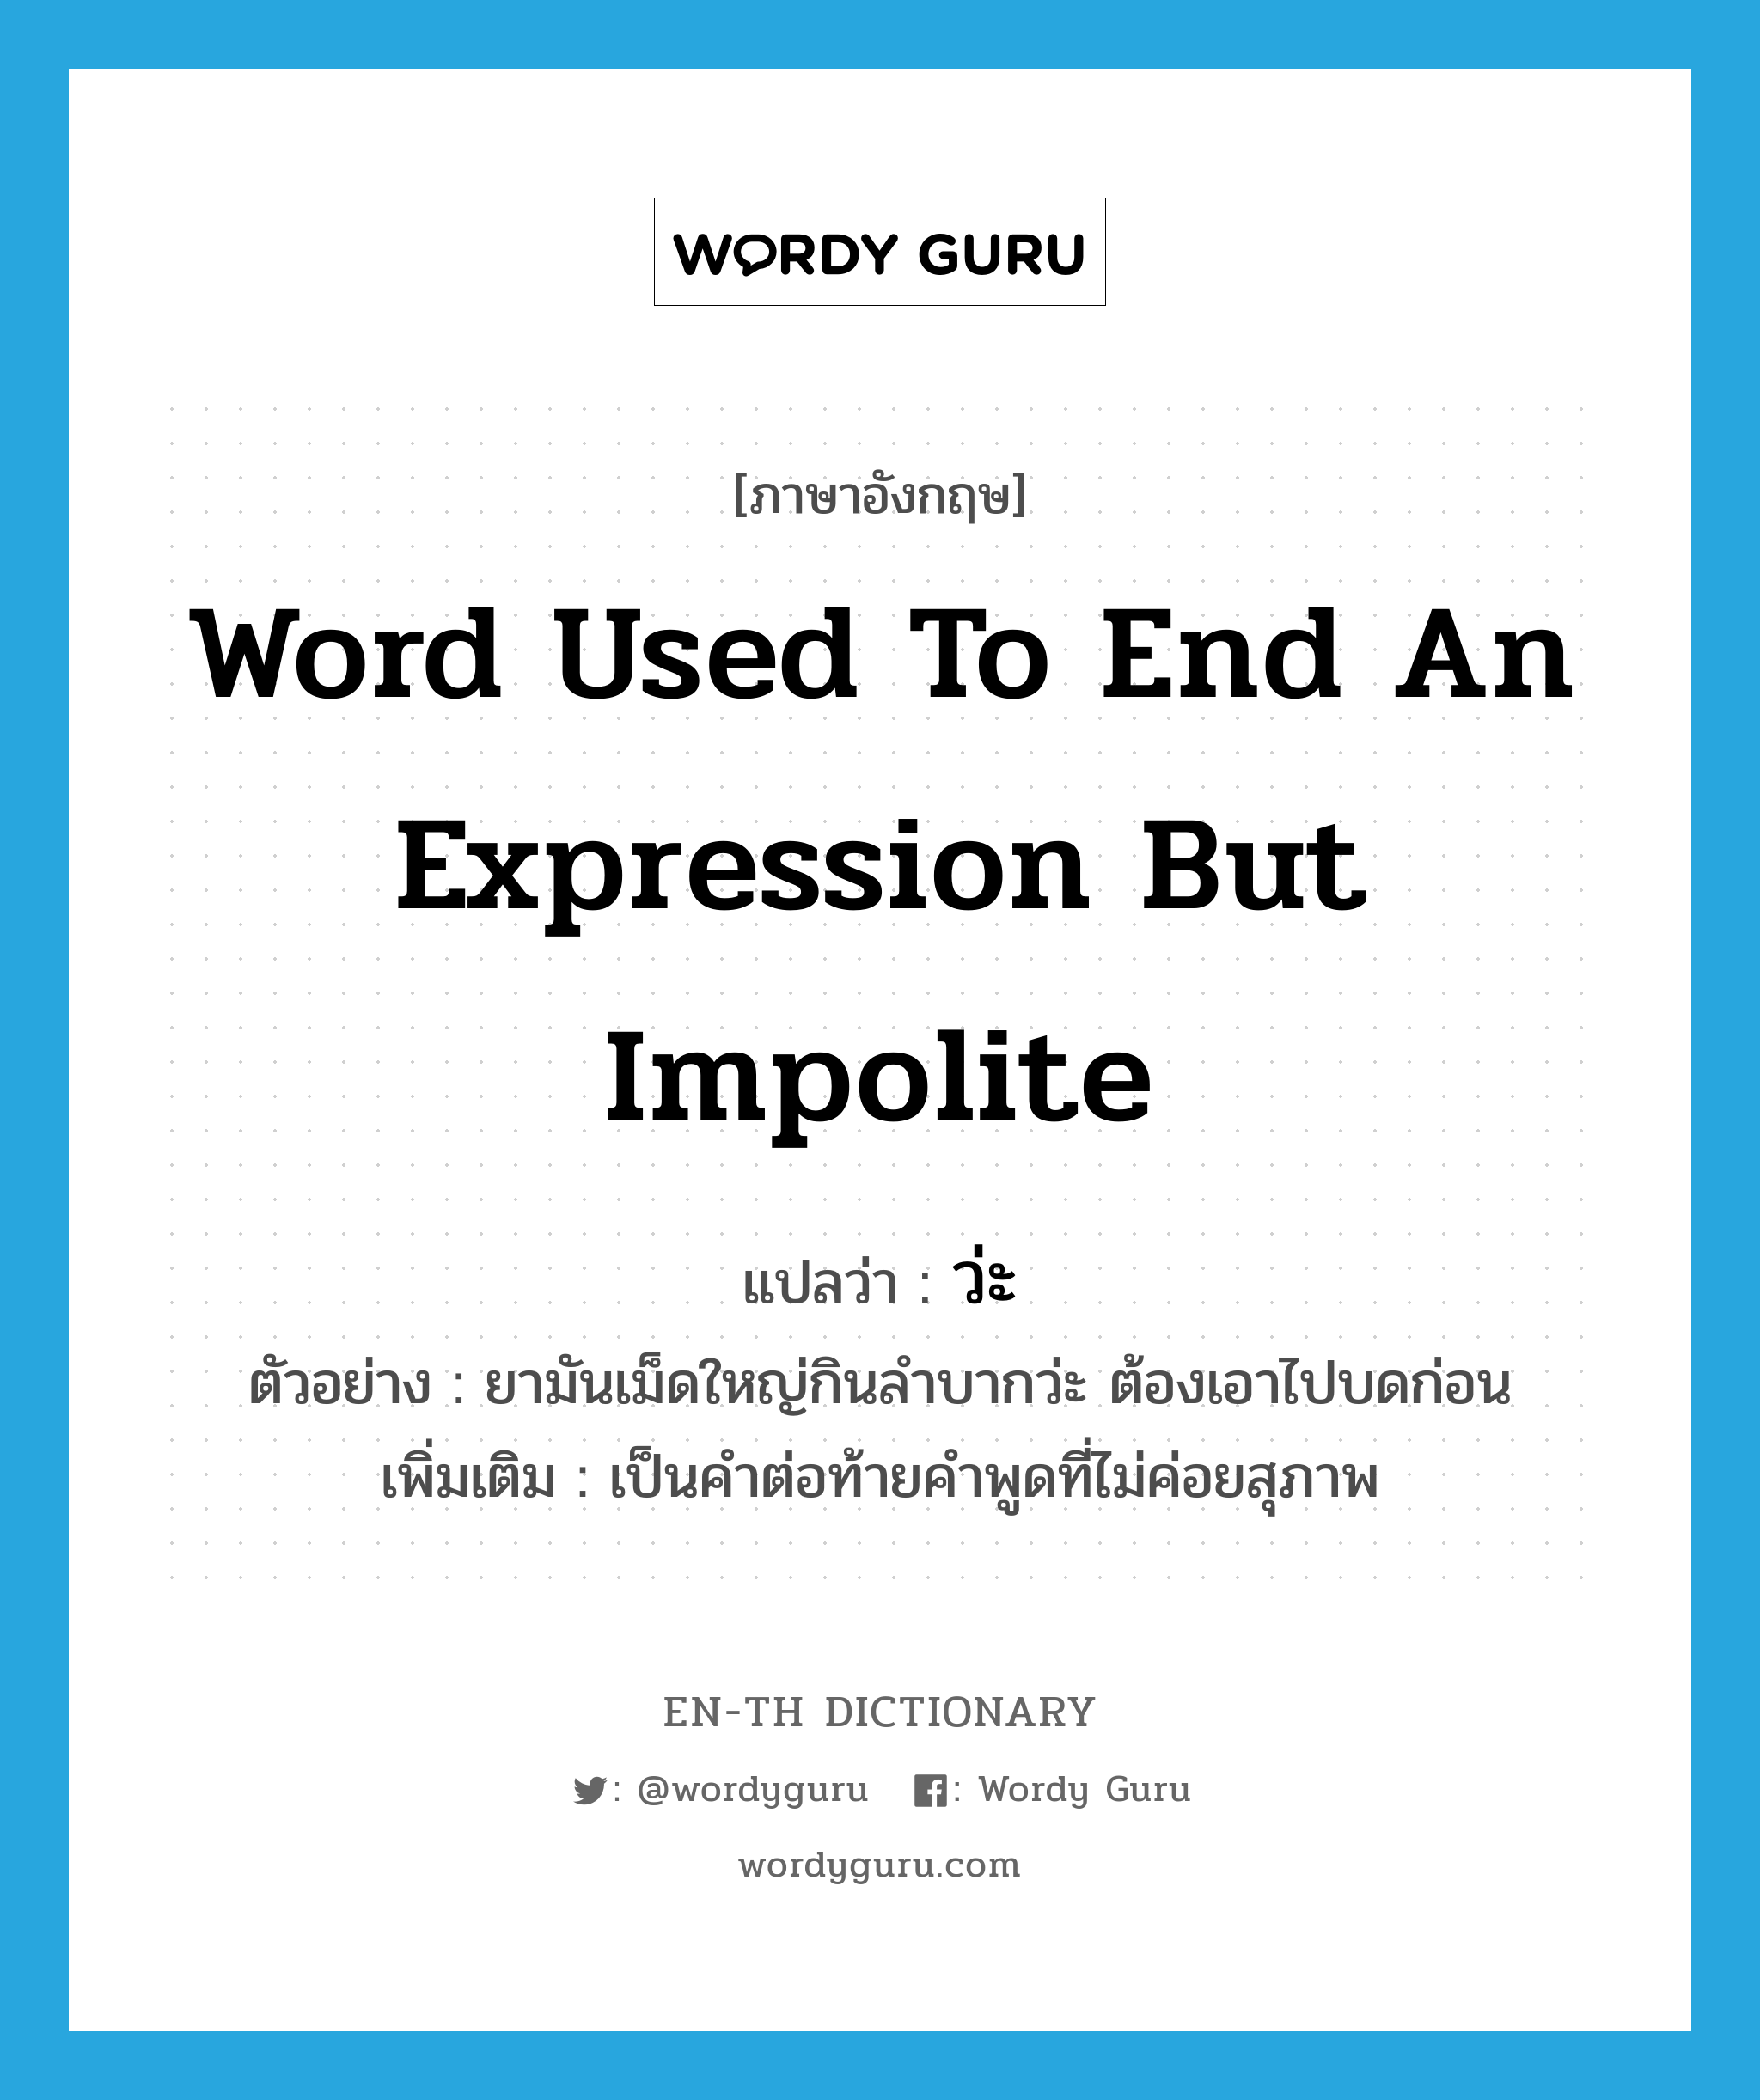 word used to end an expression but impolite แปลว่า?, คำศัพท์ภาษาอังกฤษ word used to end an expression but impolite แปลว่า ว่ะ ประเภท END ตัวอย่าง ยามันเม็ดใหญ่กินลำบากว่ะ ต้องเอาไปบดก่อน เพิ่มเติม เป็นคำต่อท้ายคำพูดที่ไม่ค่อยสุภาพ หมวด END